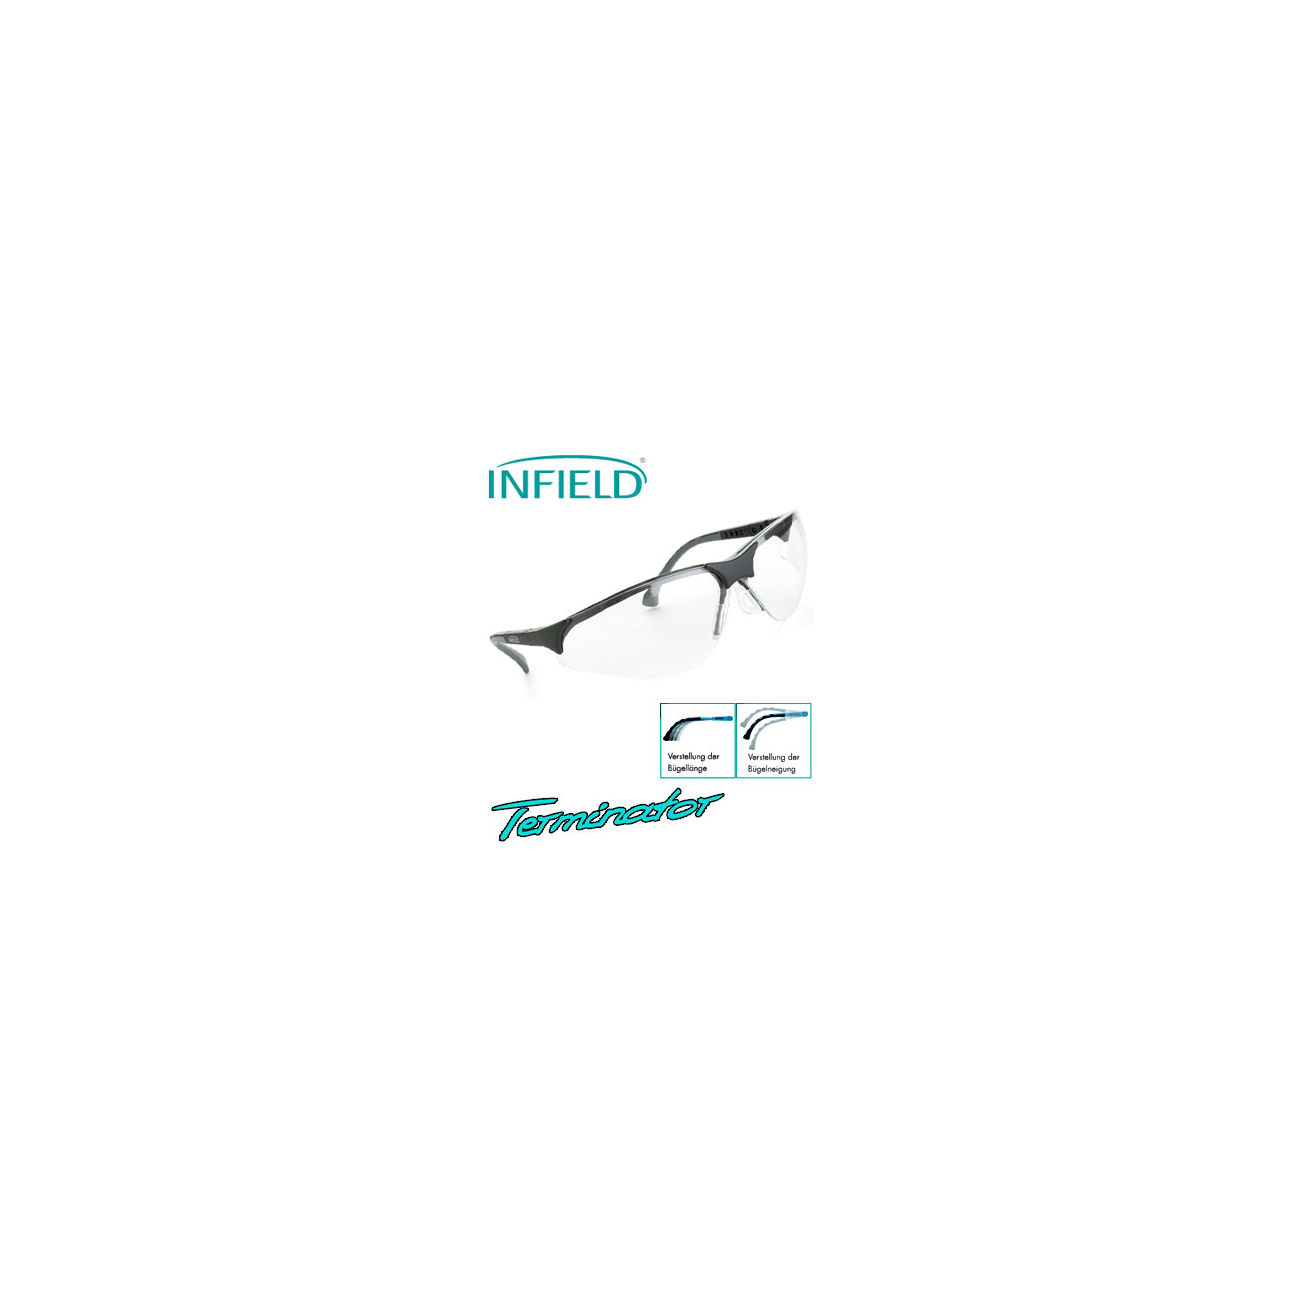 Infield Schutzbrille Terminator PC HC UV schwarz/klar